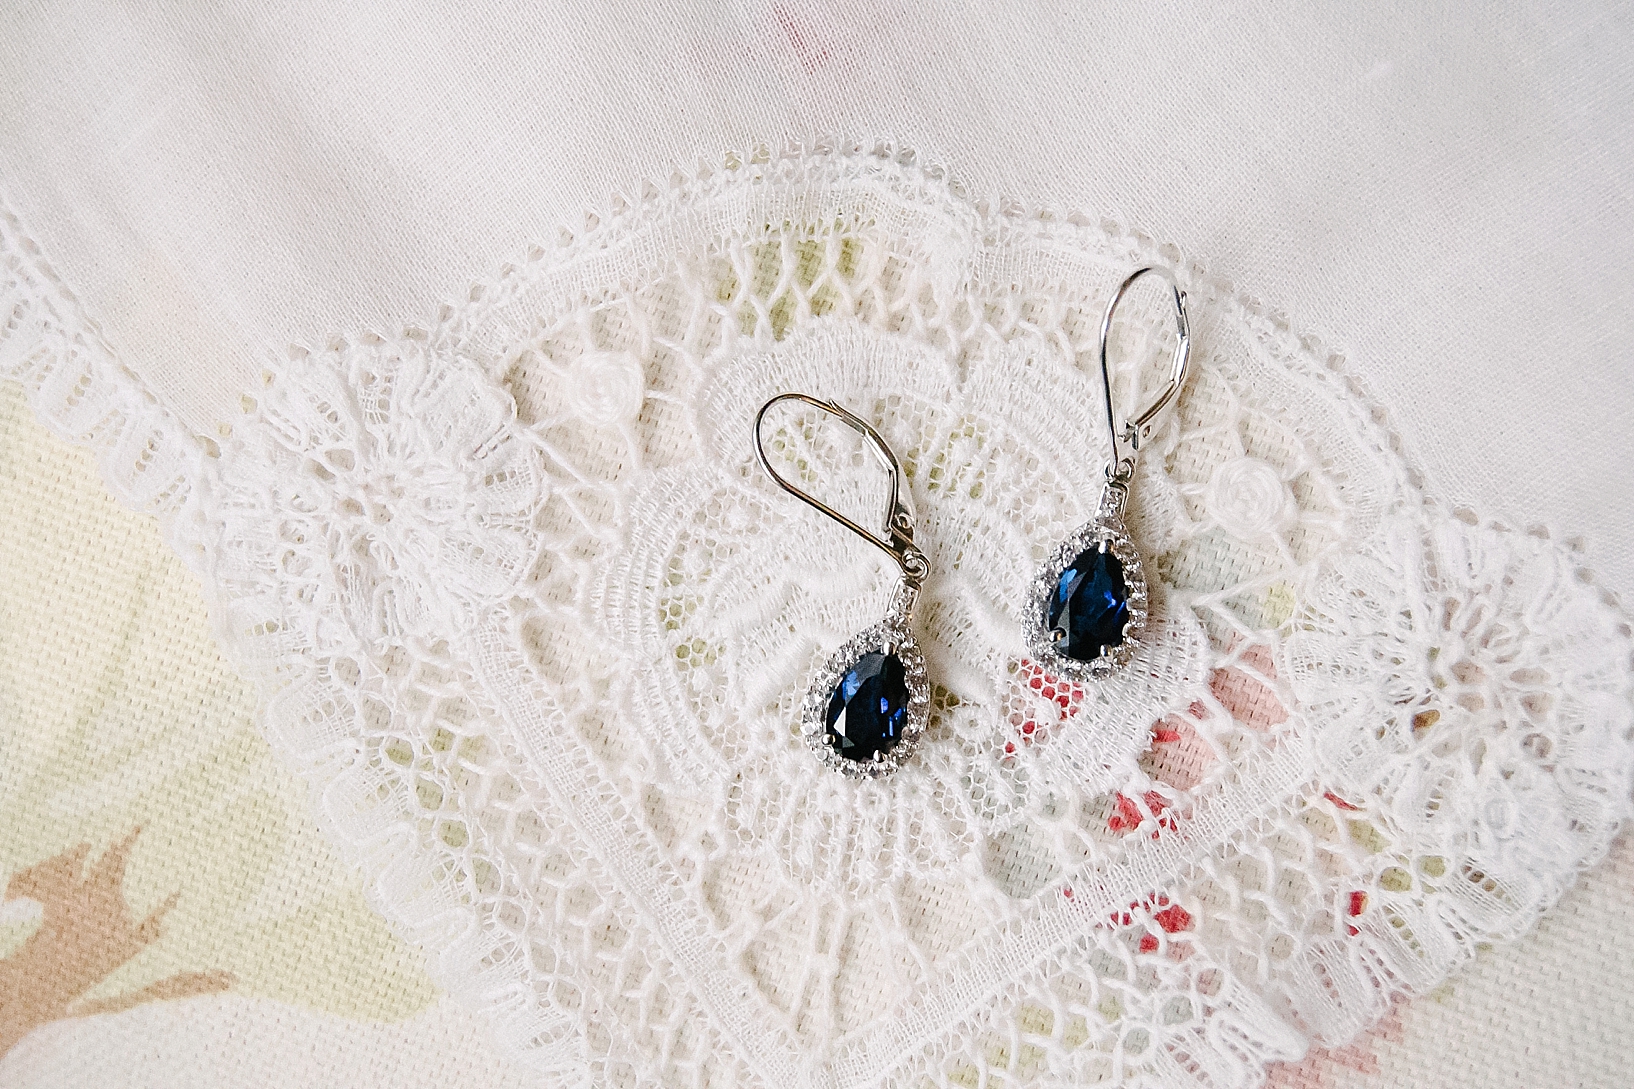 blue sapphire earrings on lace handkerchief